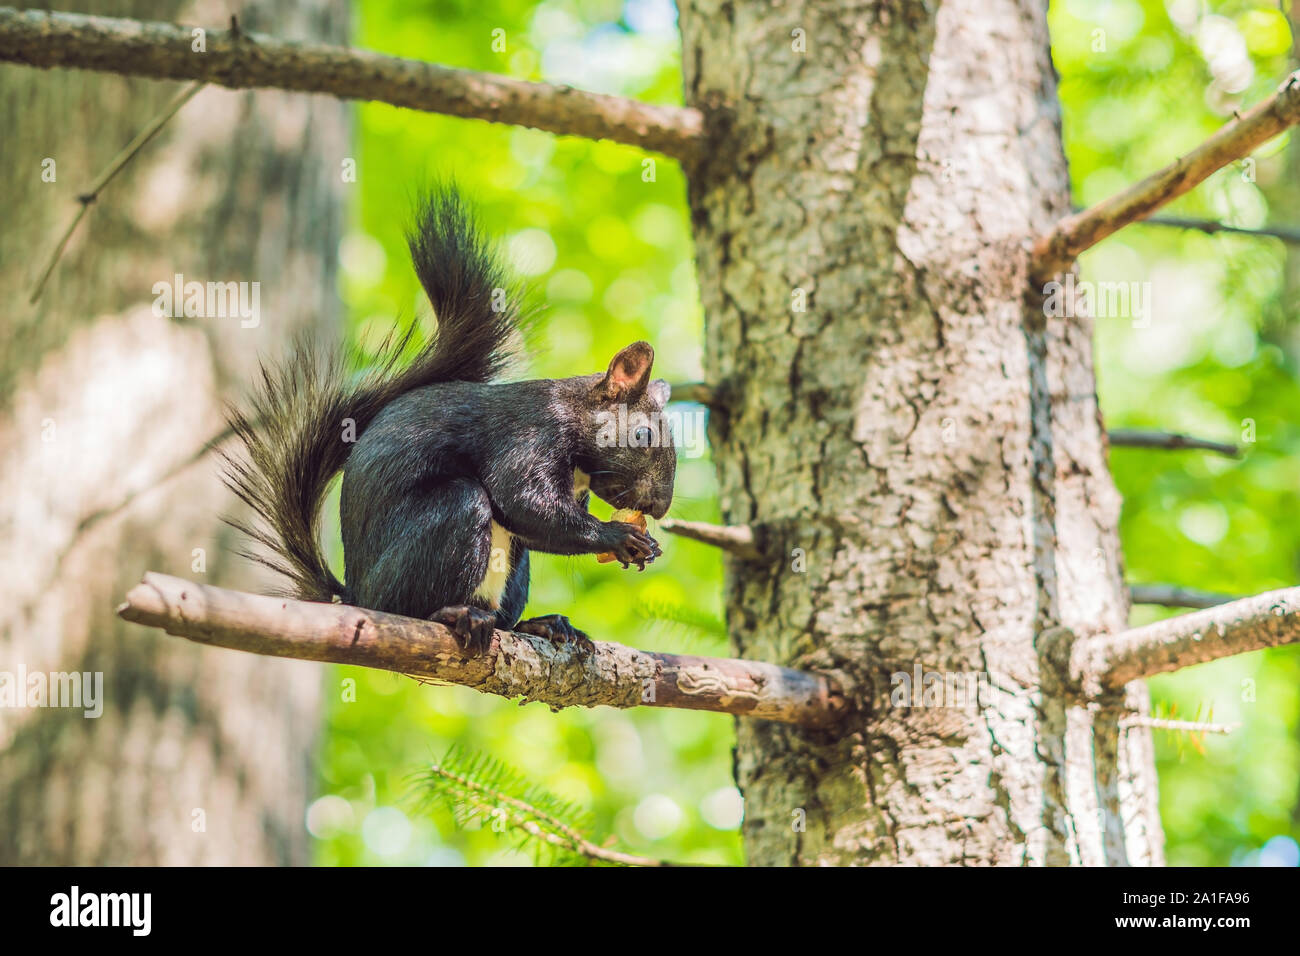 L'écureuil noir est assis sur un arbre et mange. Banque D'Images